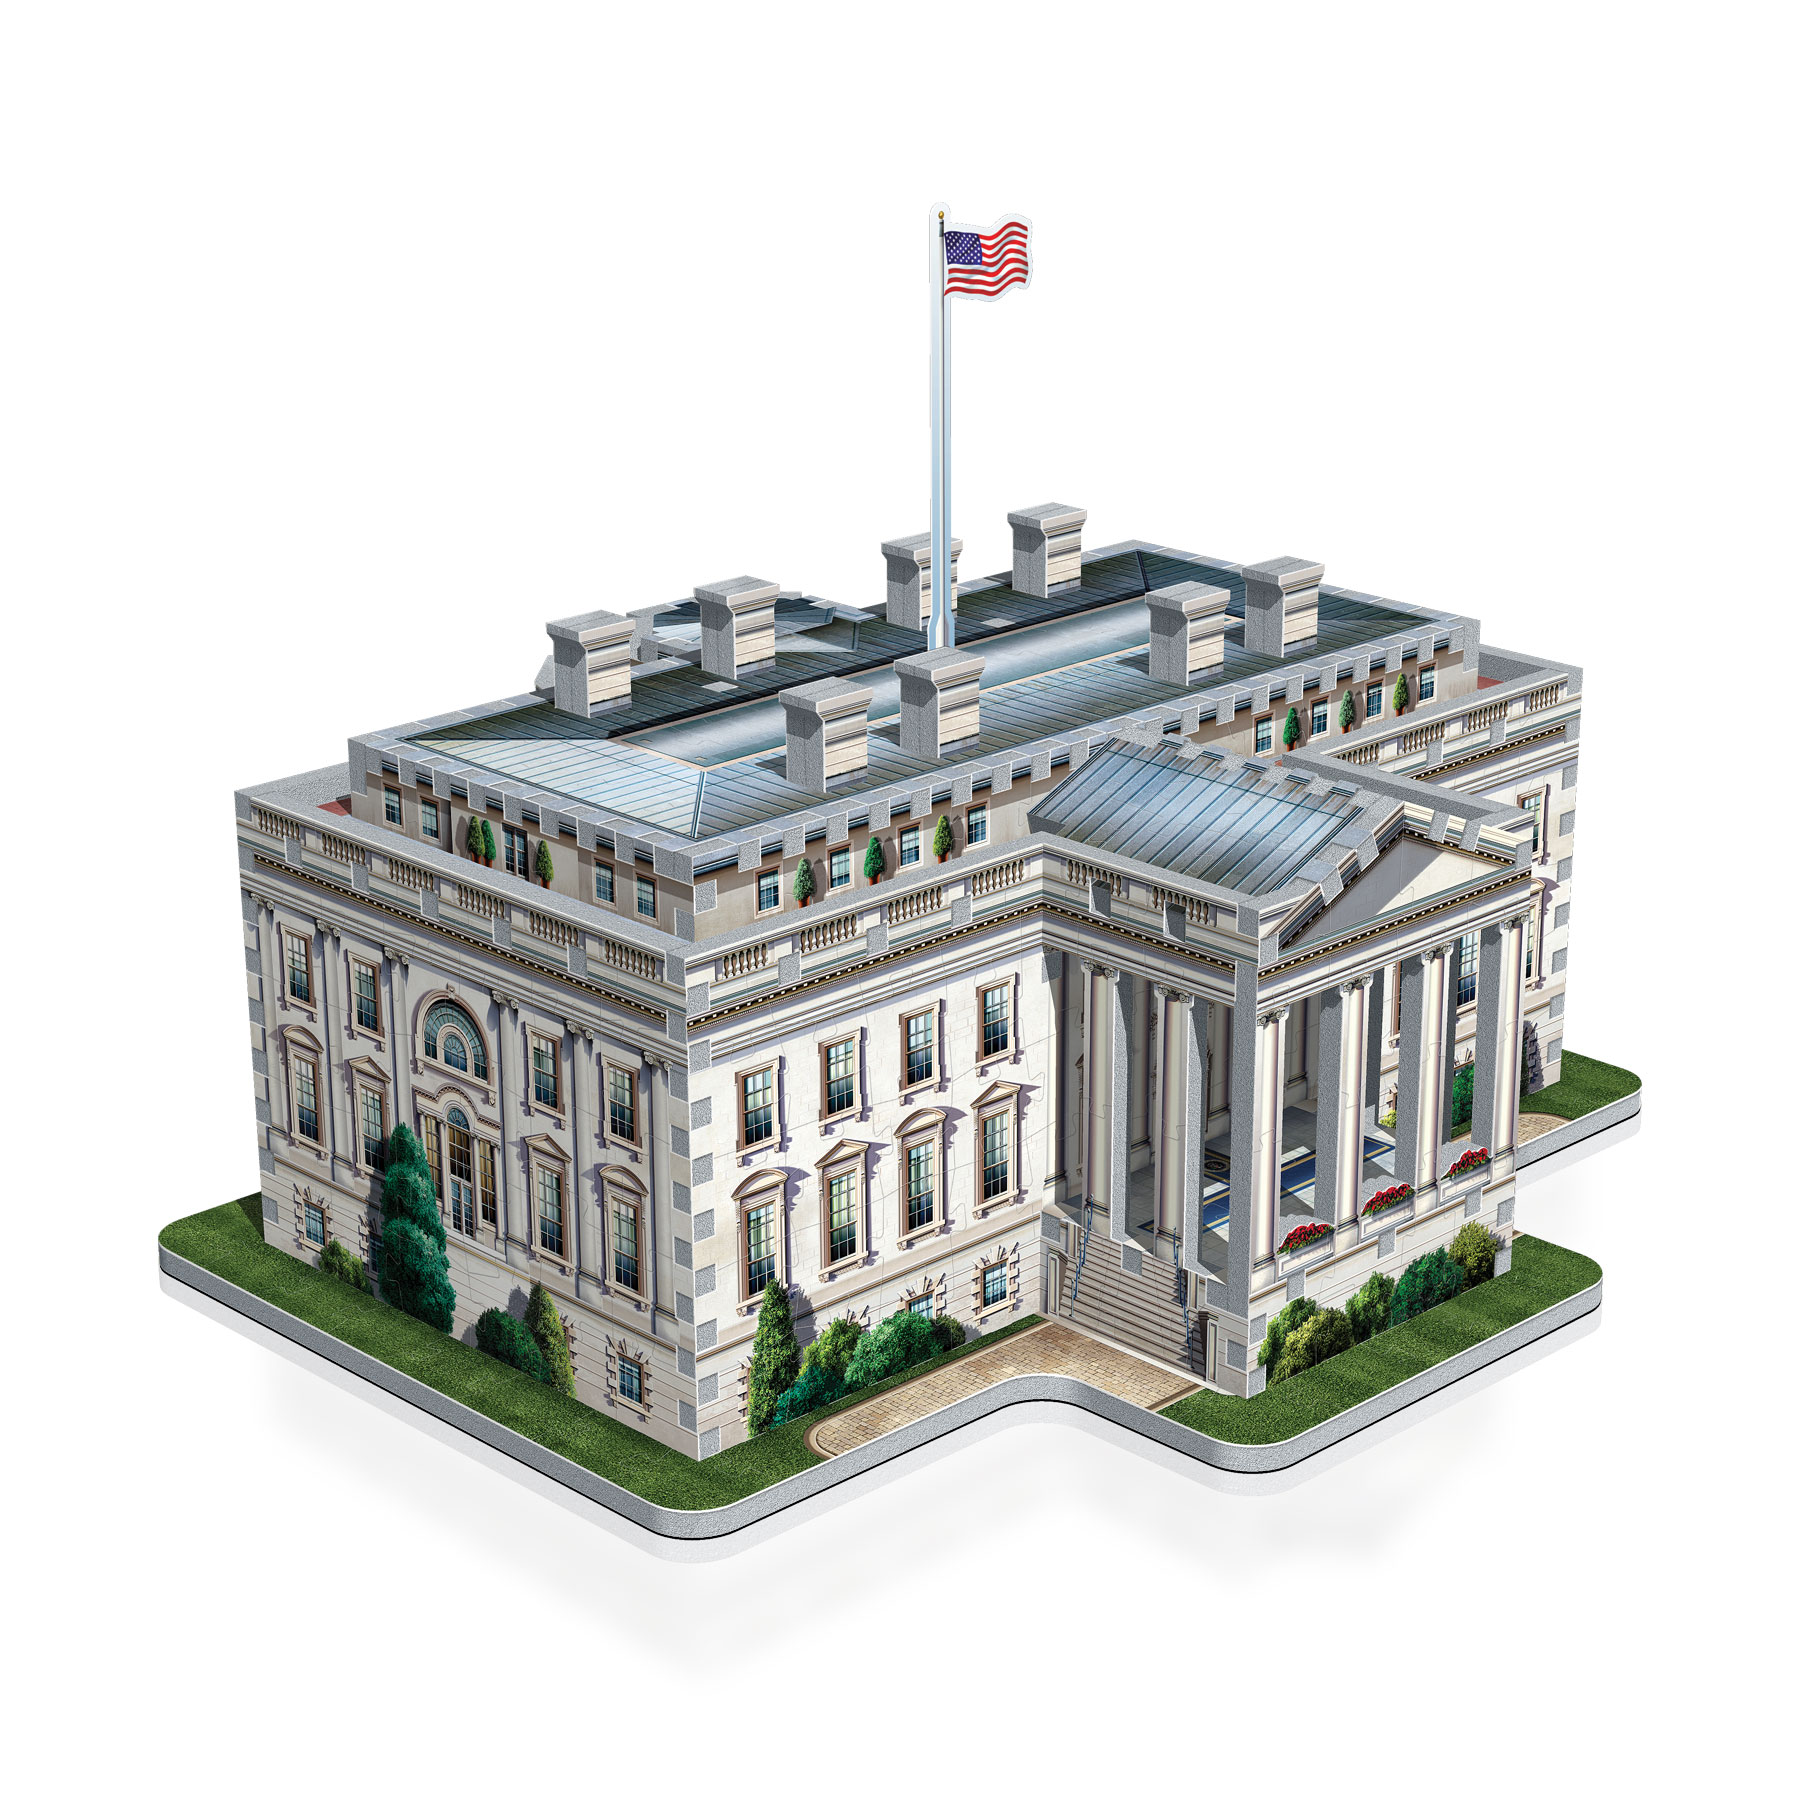 Casse-tête - La Maison Blanche Washington (490 pièces) - Wrebbit 3D